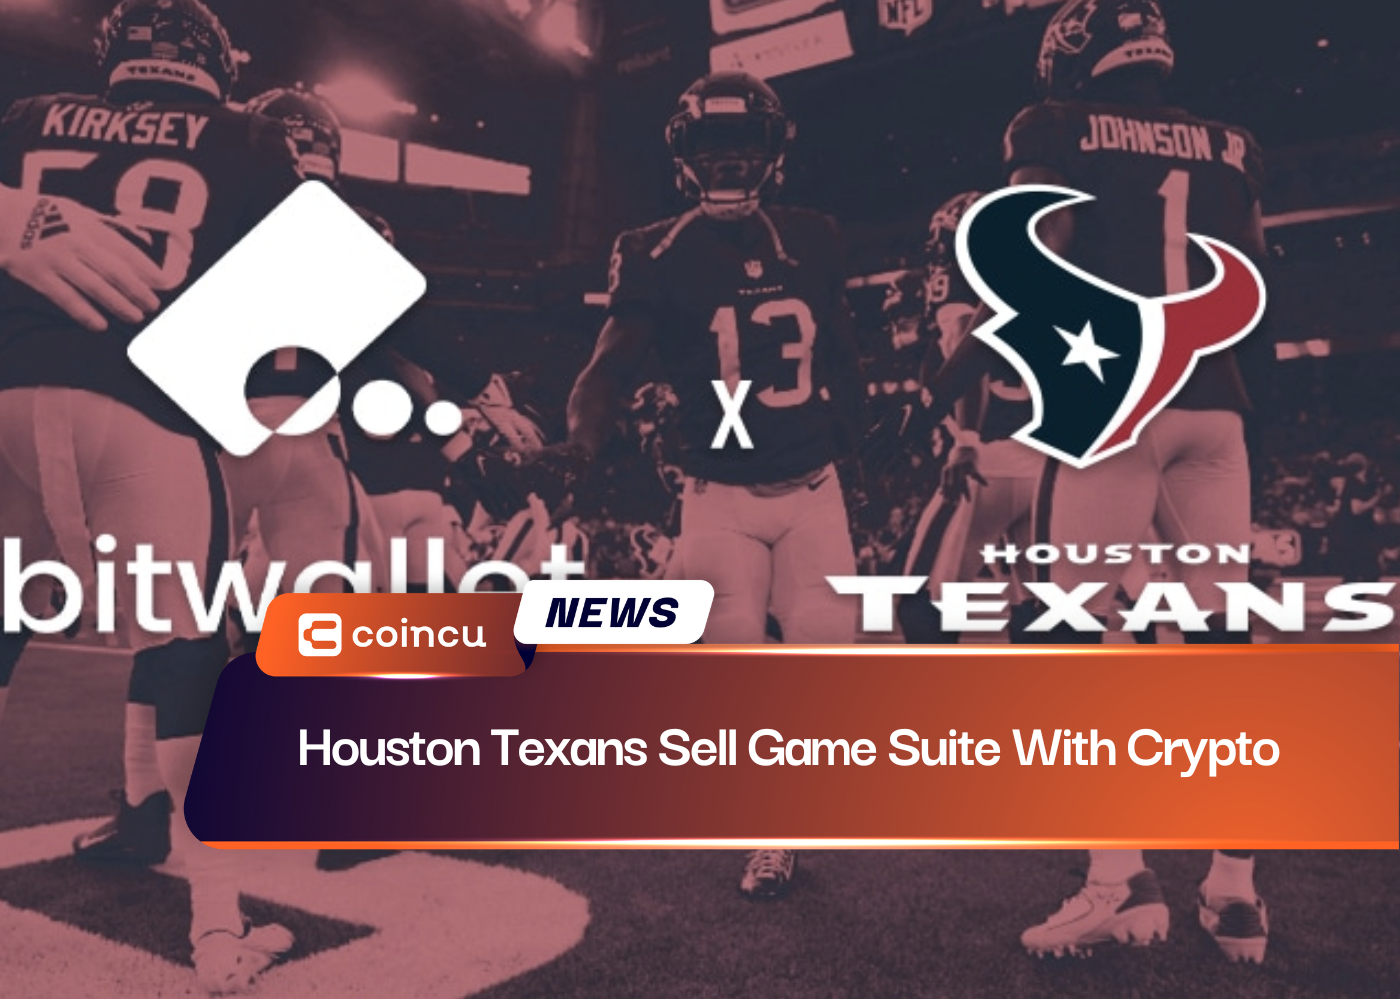 Houston Texans Oyun Paketini Kriptoyla Satıyor